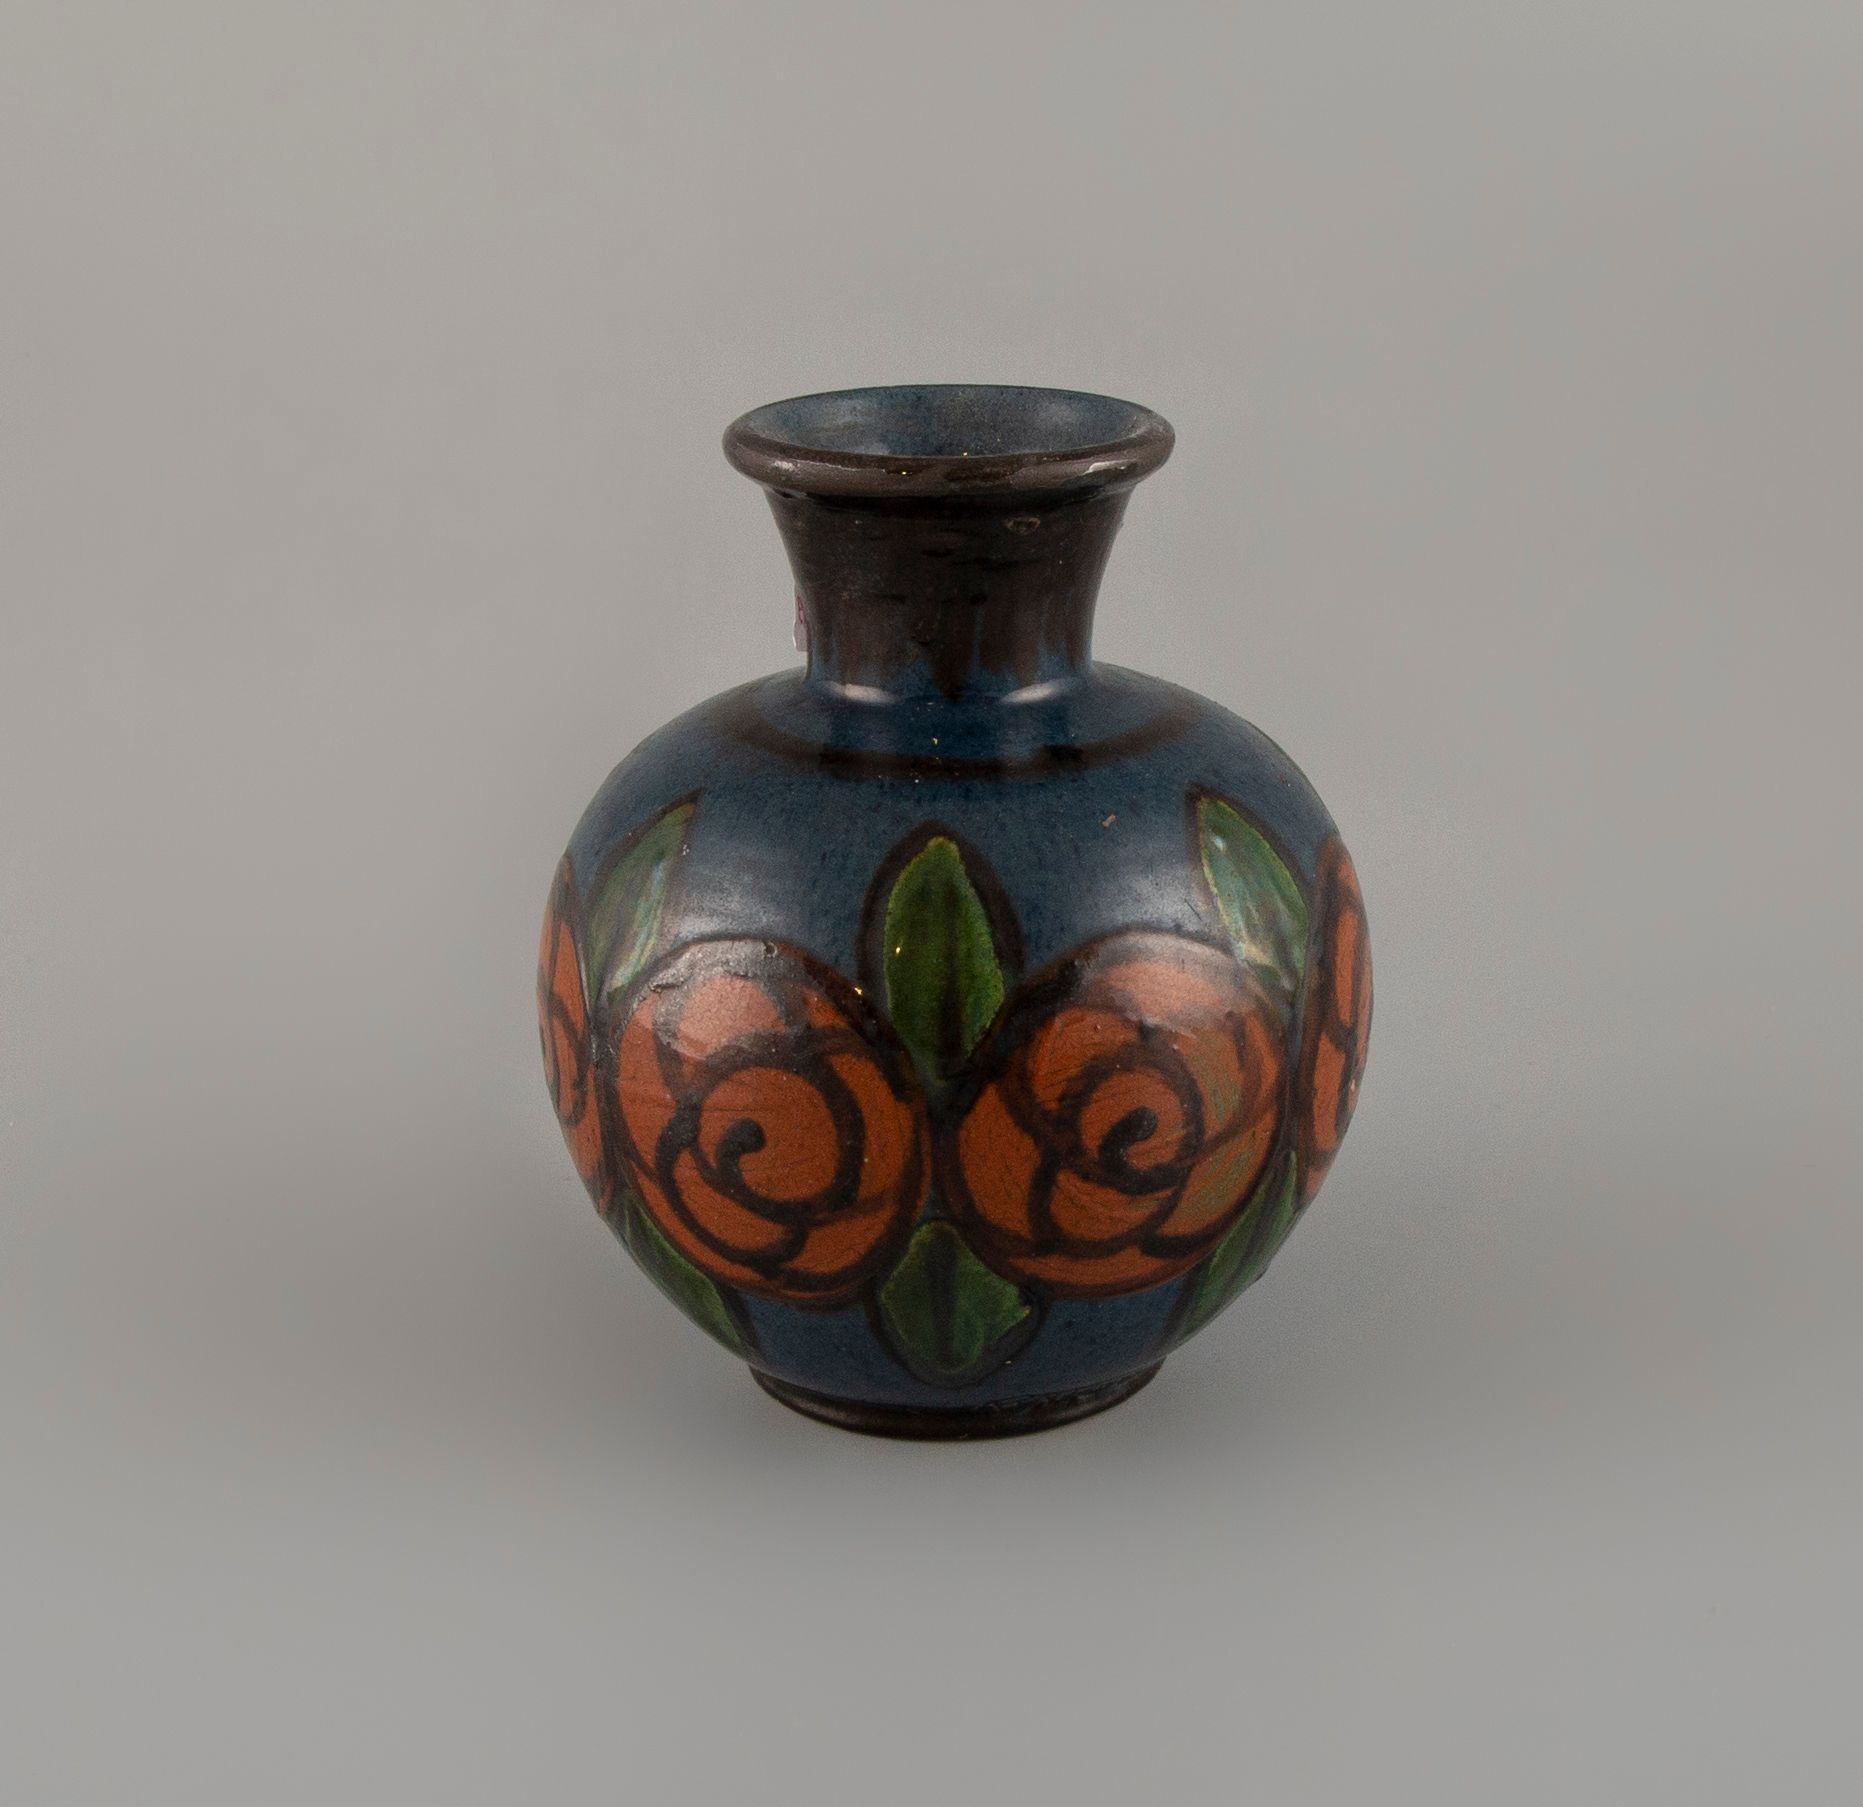 Null Ball vase in glazed ceramic. Signed NTEAE.